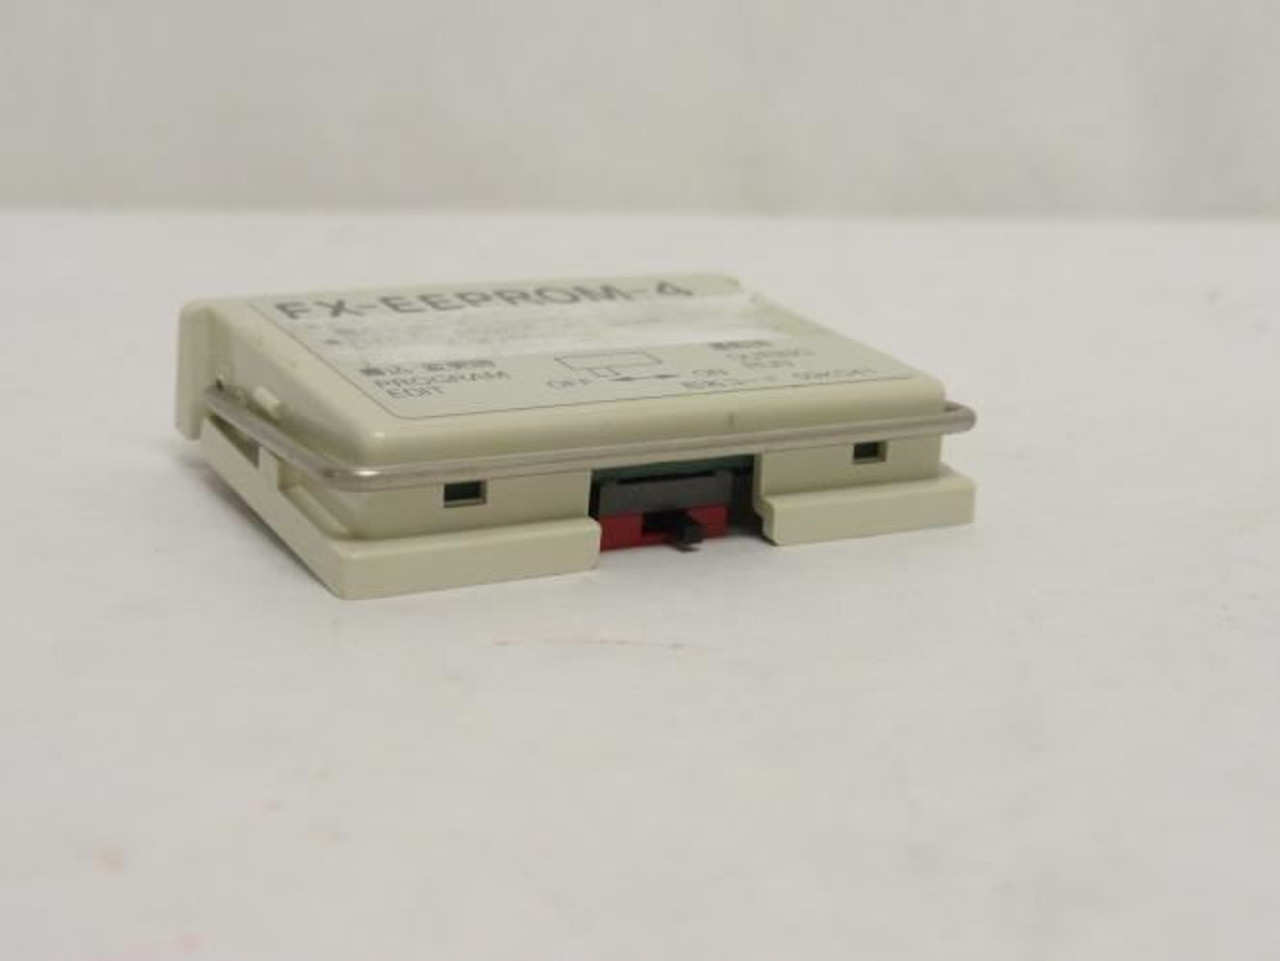 Mitsubishi FX-EEPROM-4; FX Memory Cassette